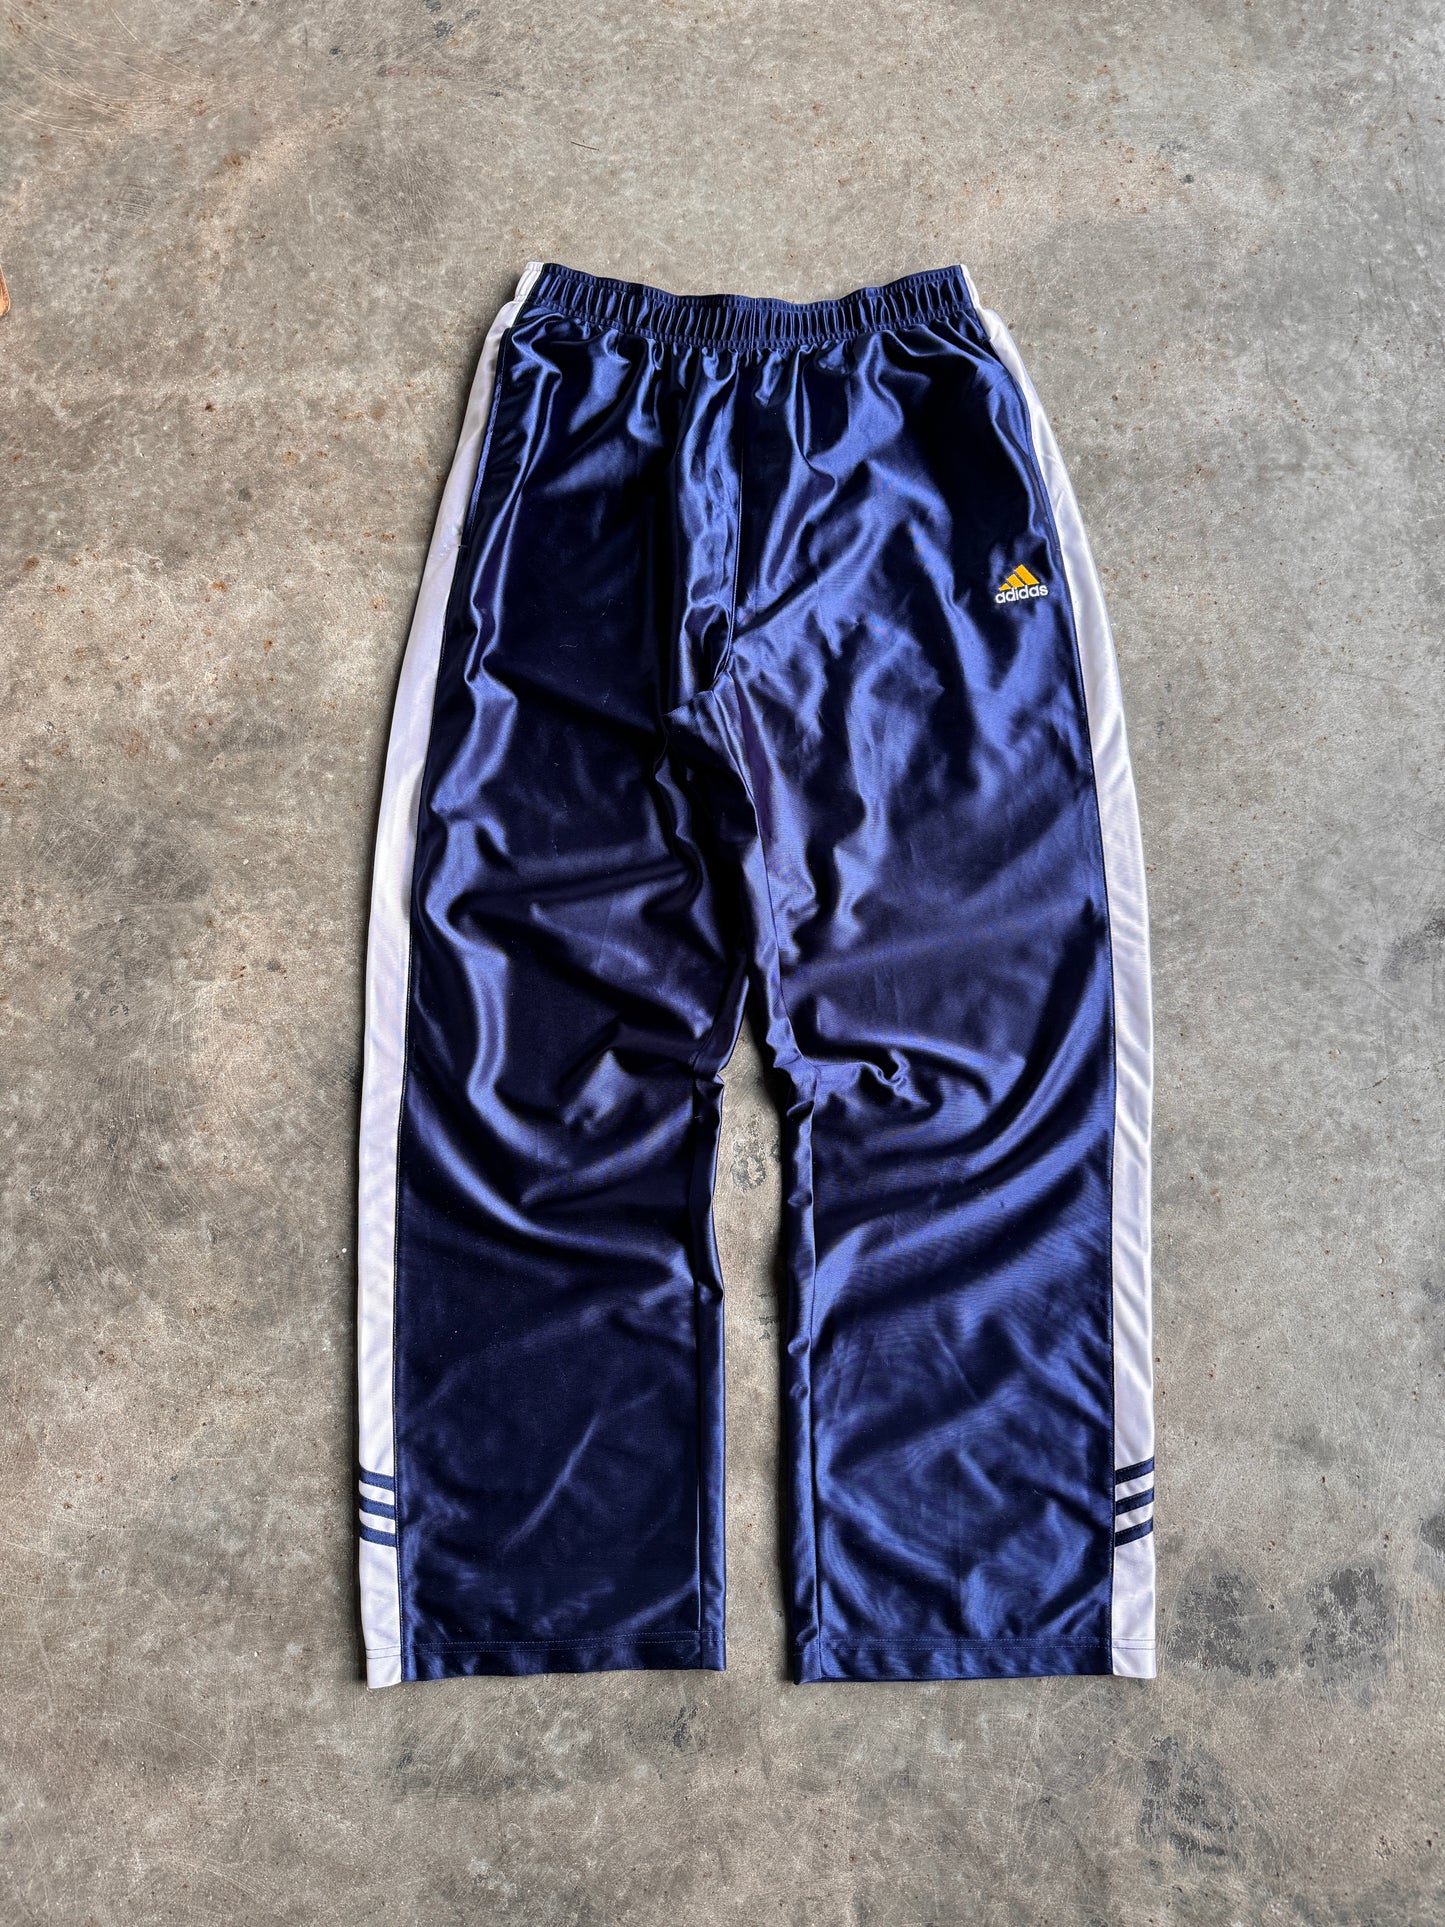 Y2K Adidas Track Pants - XL